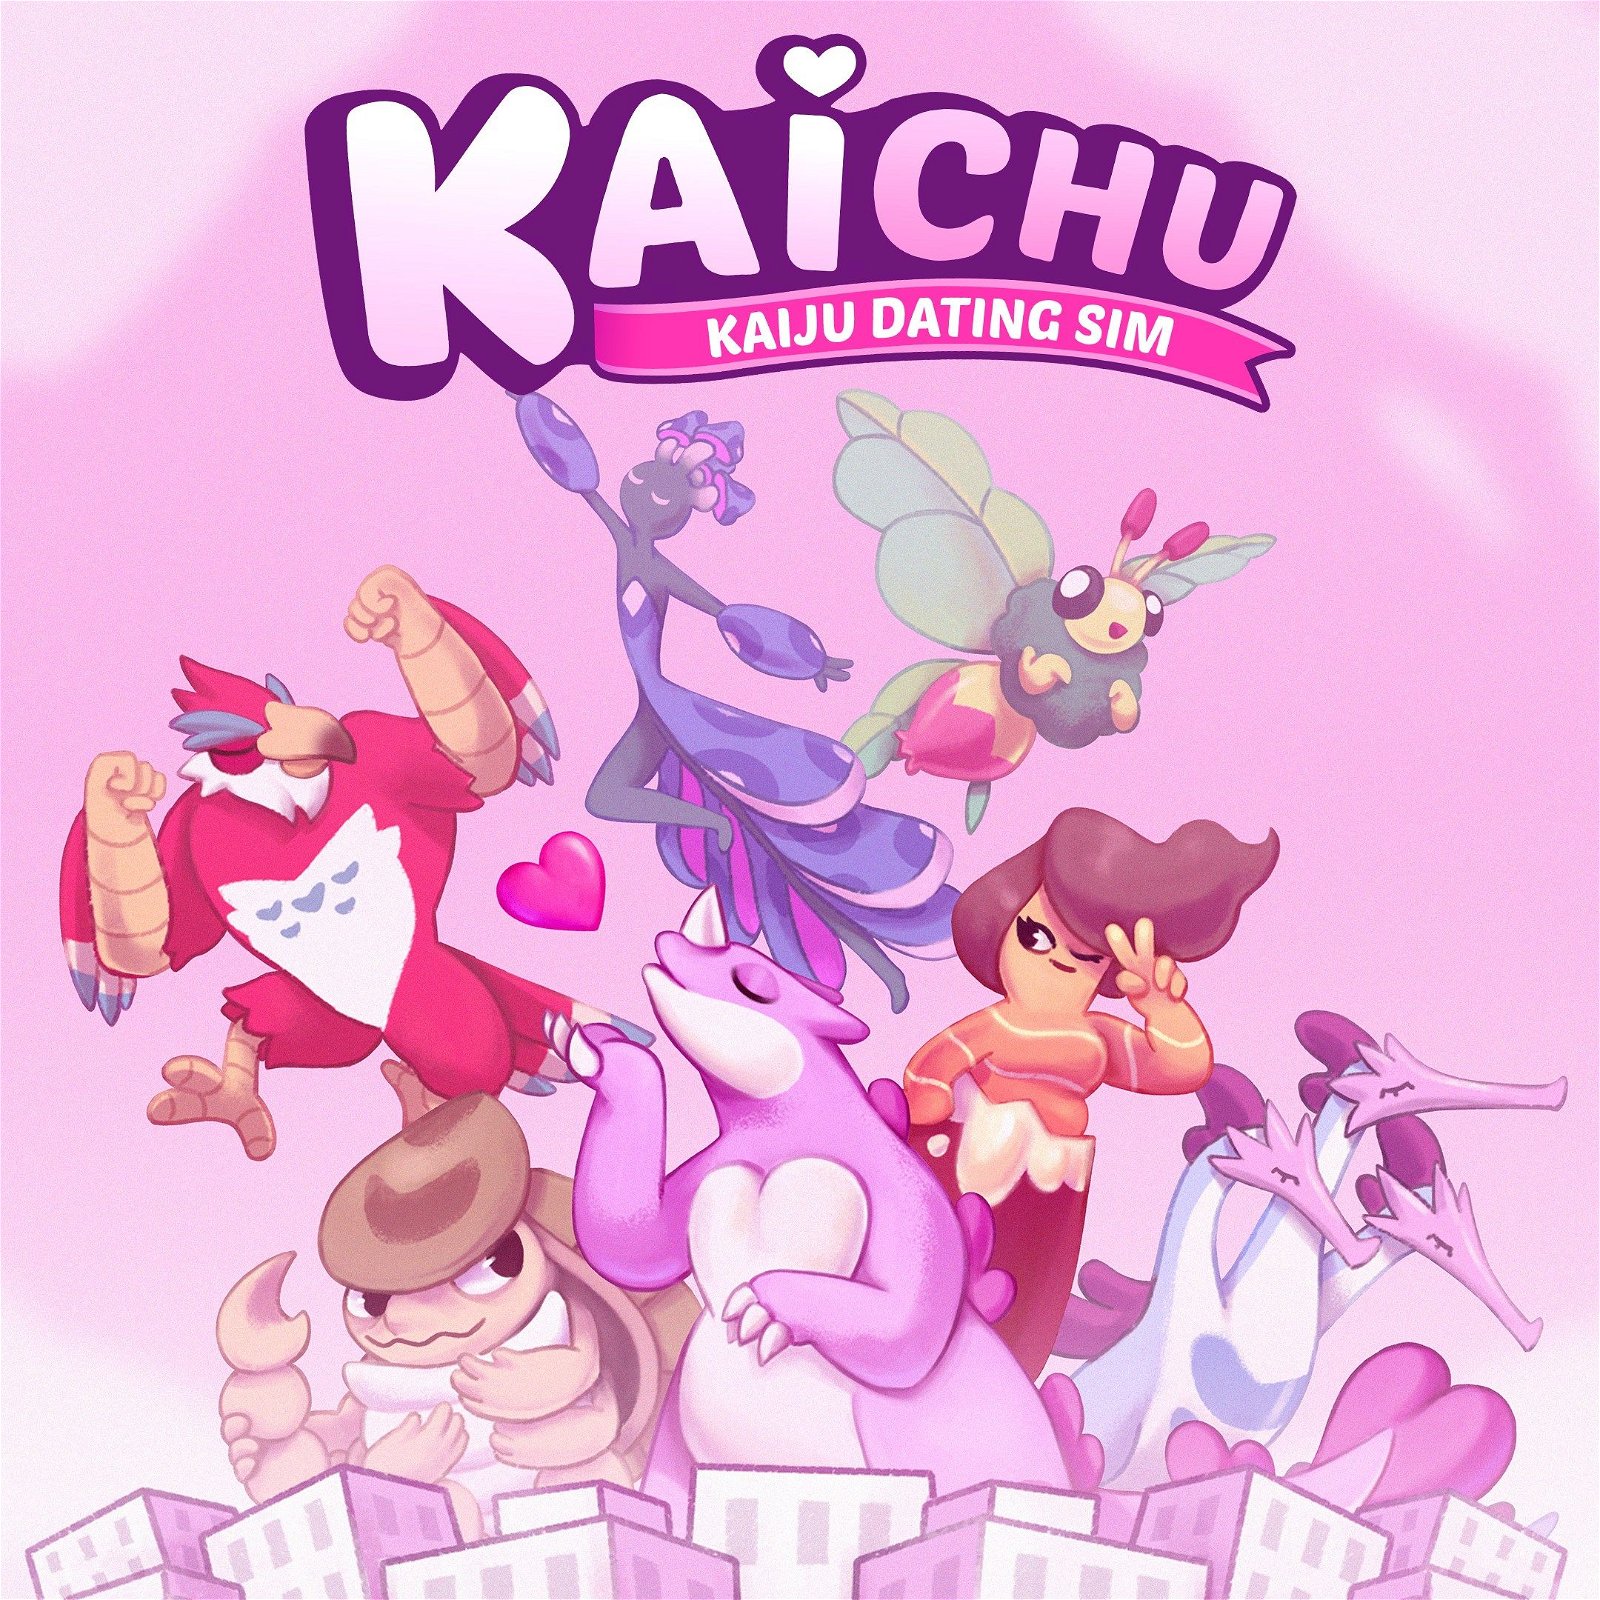 Image of Kaichu: The Kaiju Dating Sim